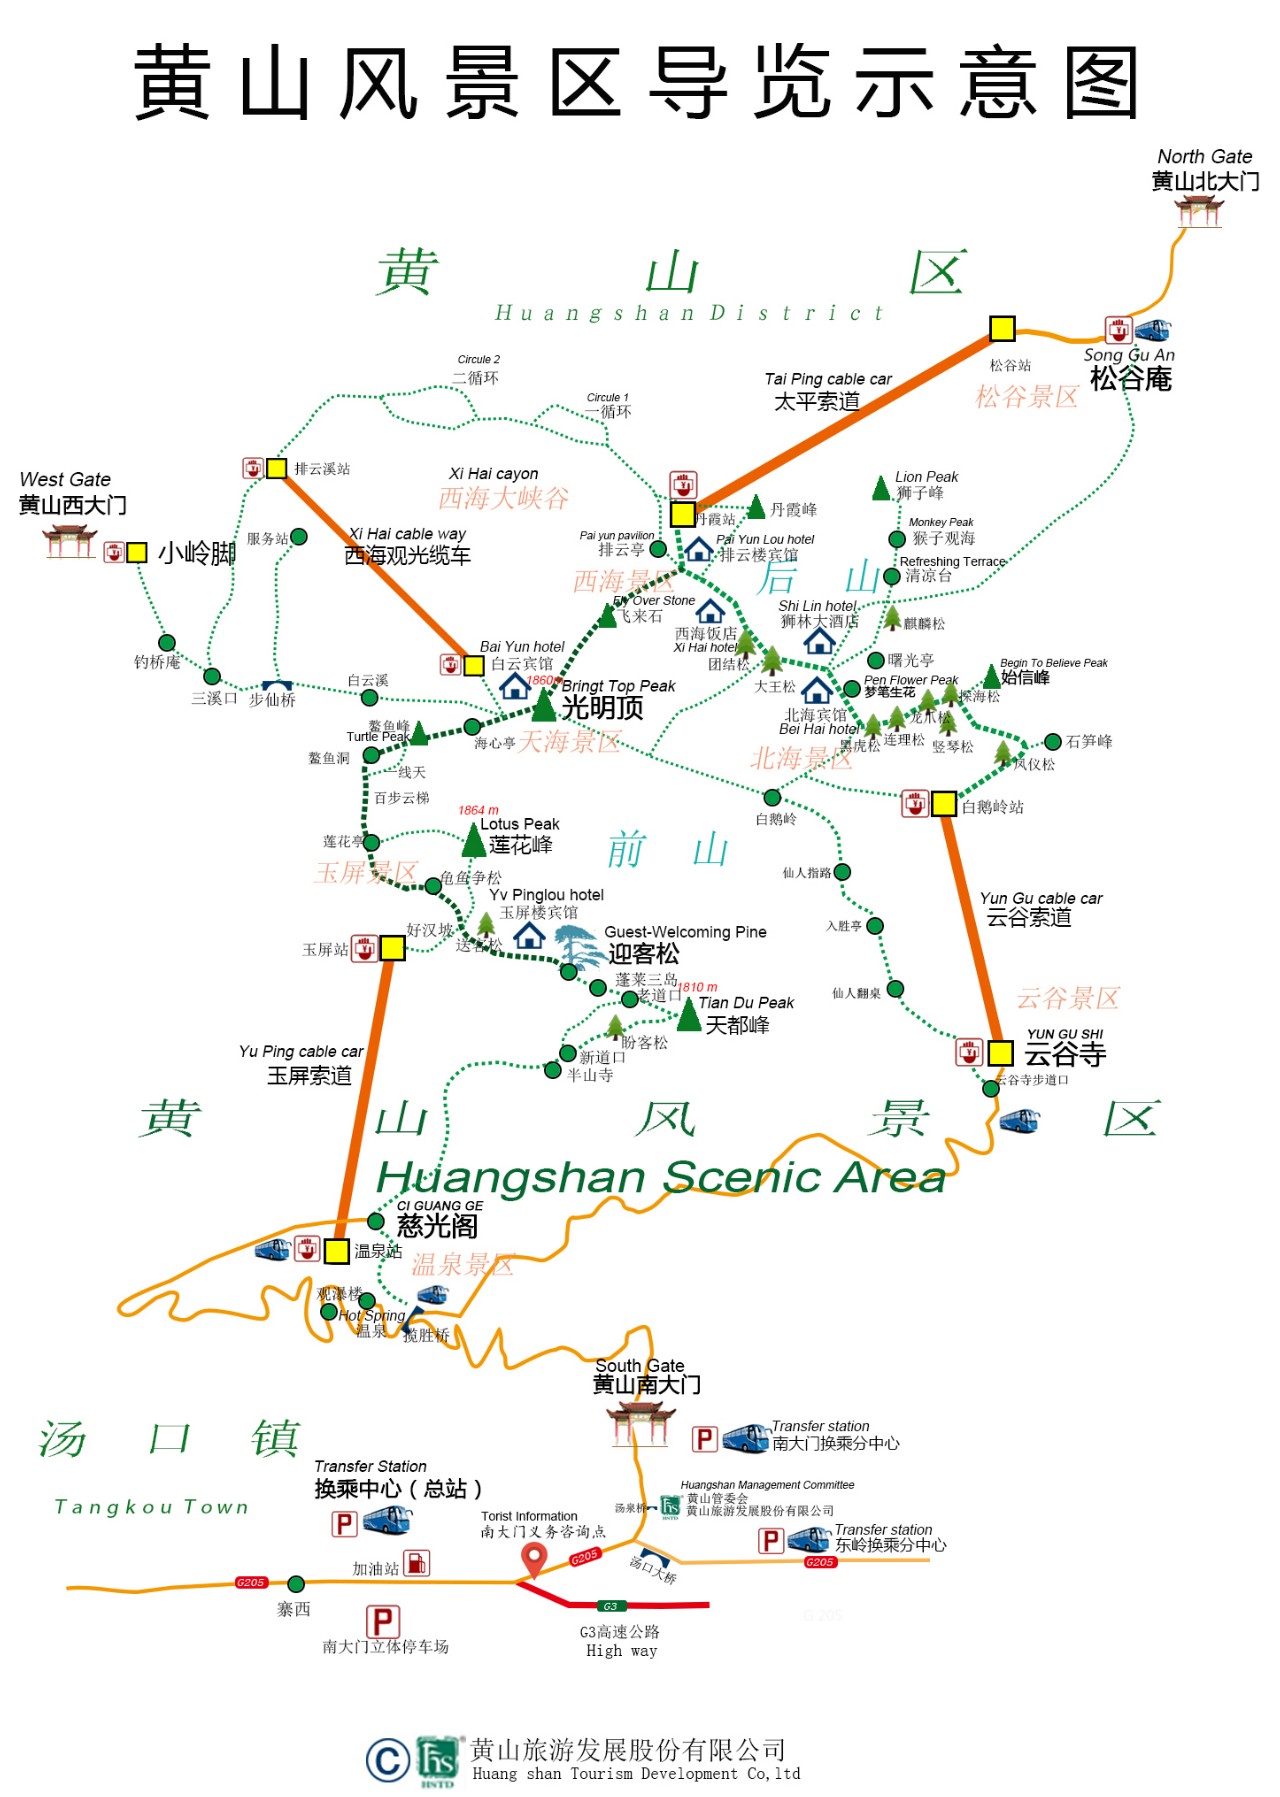 Mount Huangshan, Yellow Mountain Tourist Map